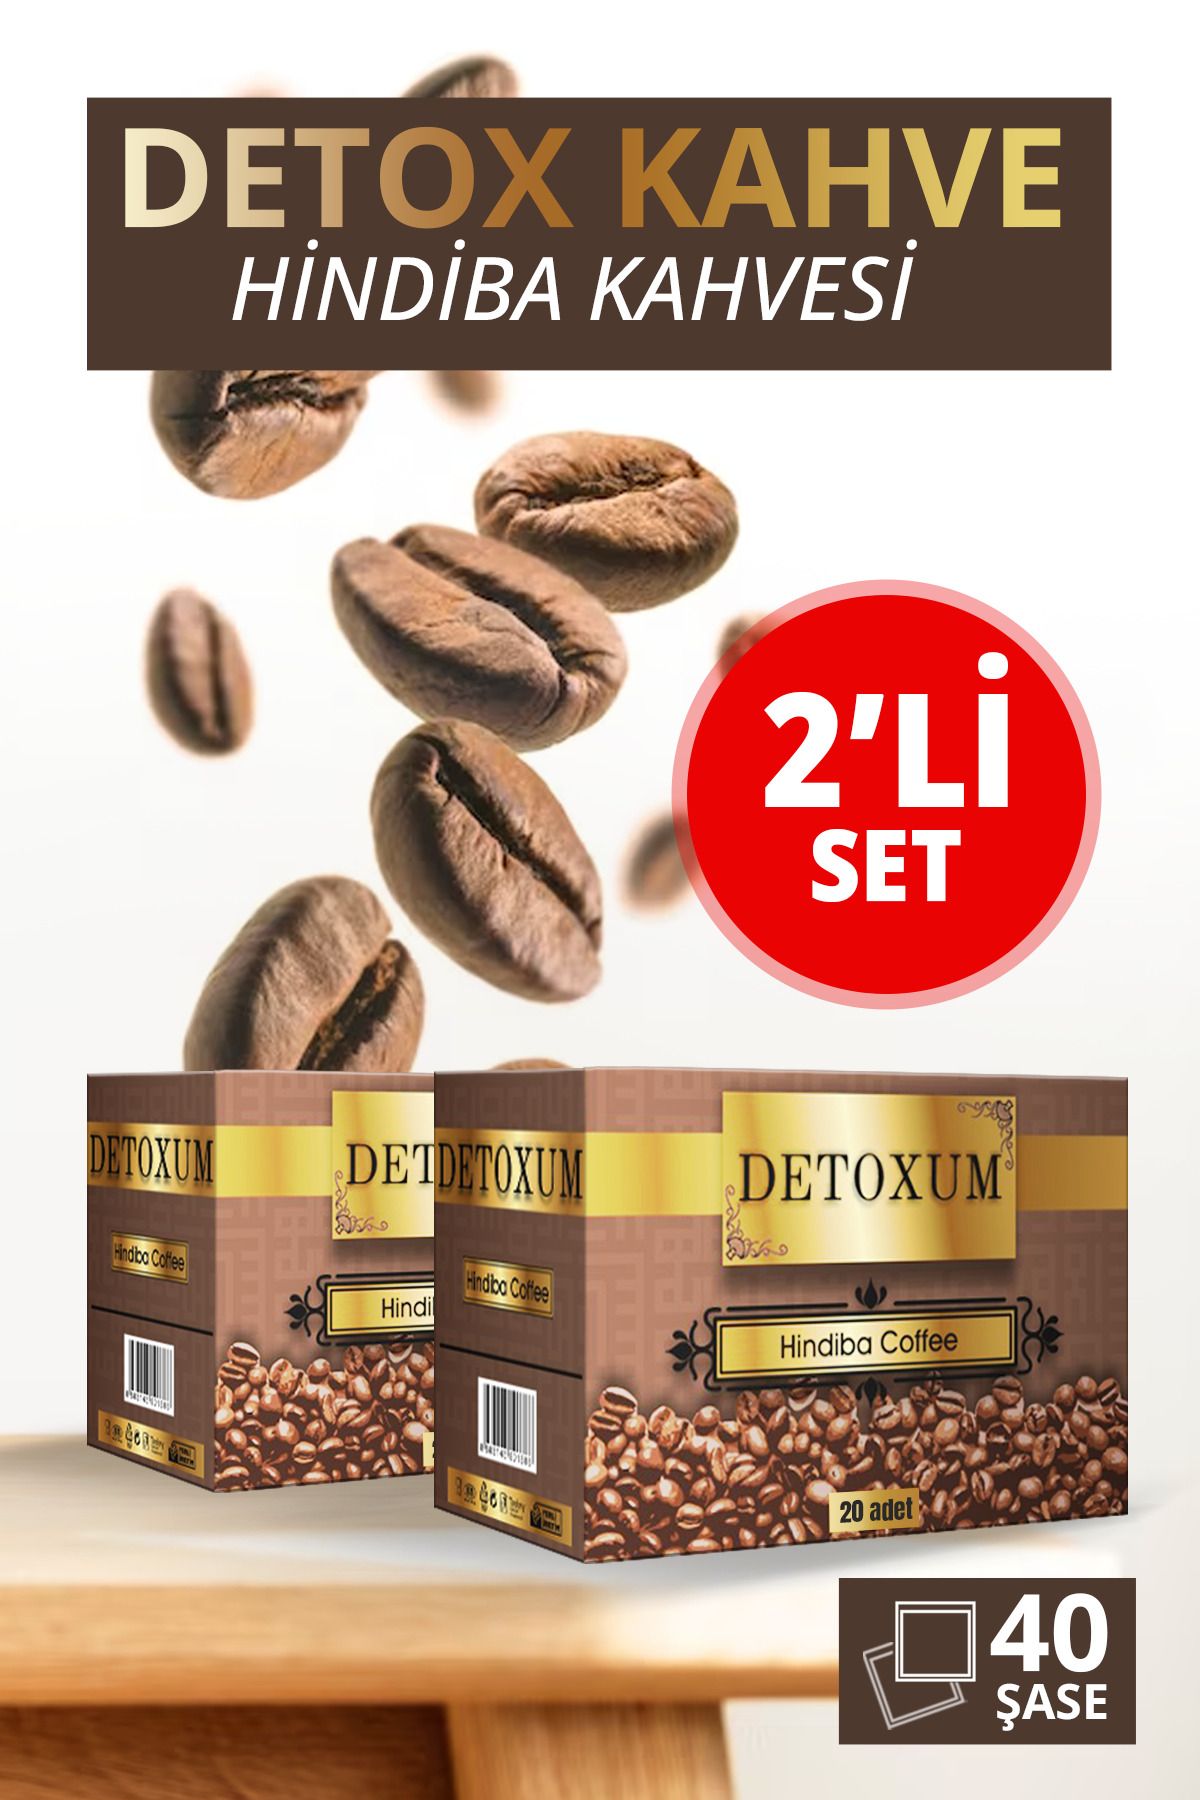 Detoxum Zayıflama,destekleyici Form Hindiba Kahvesi Kilo Vermeye Yardımcı Detox Kahvesi 2 Li Set